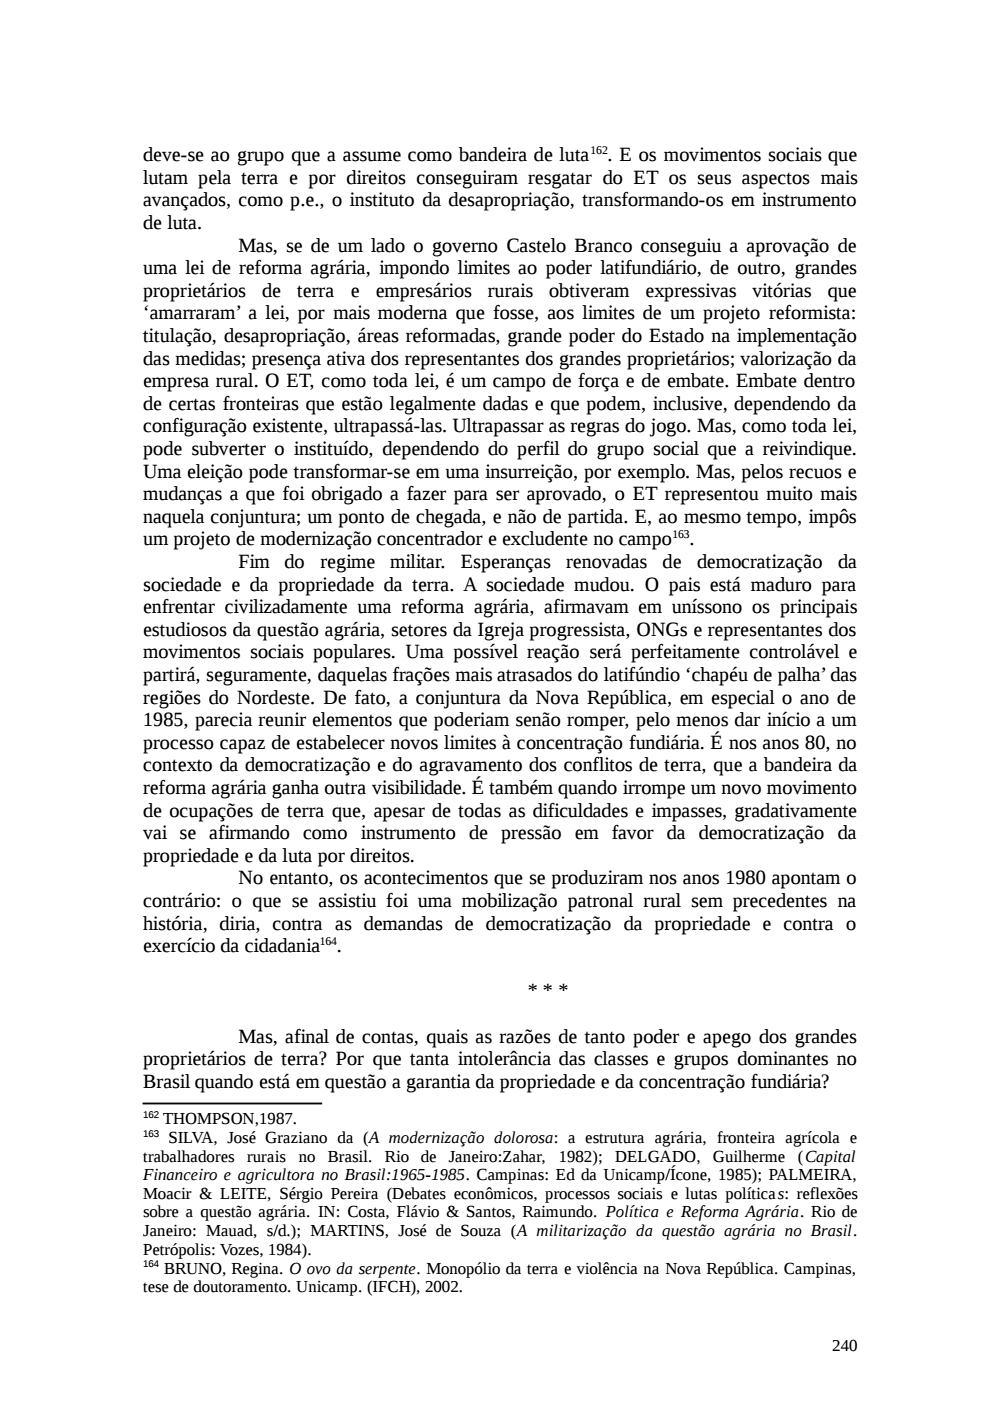 Page 240 from Relatório final da comissão